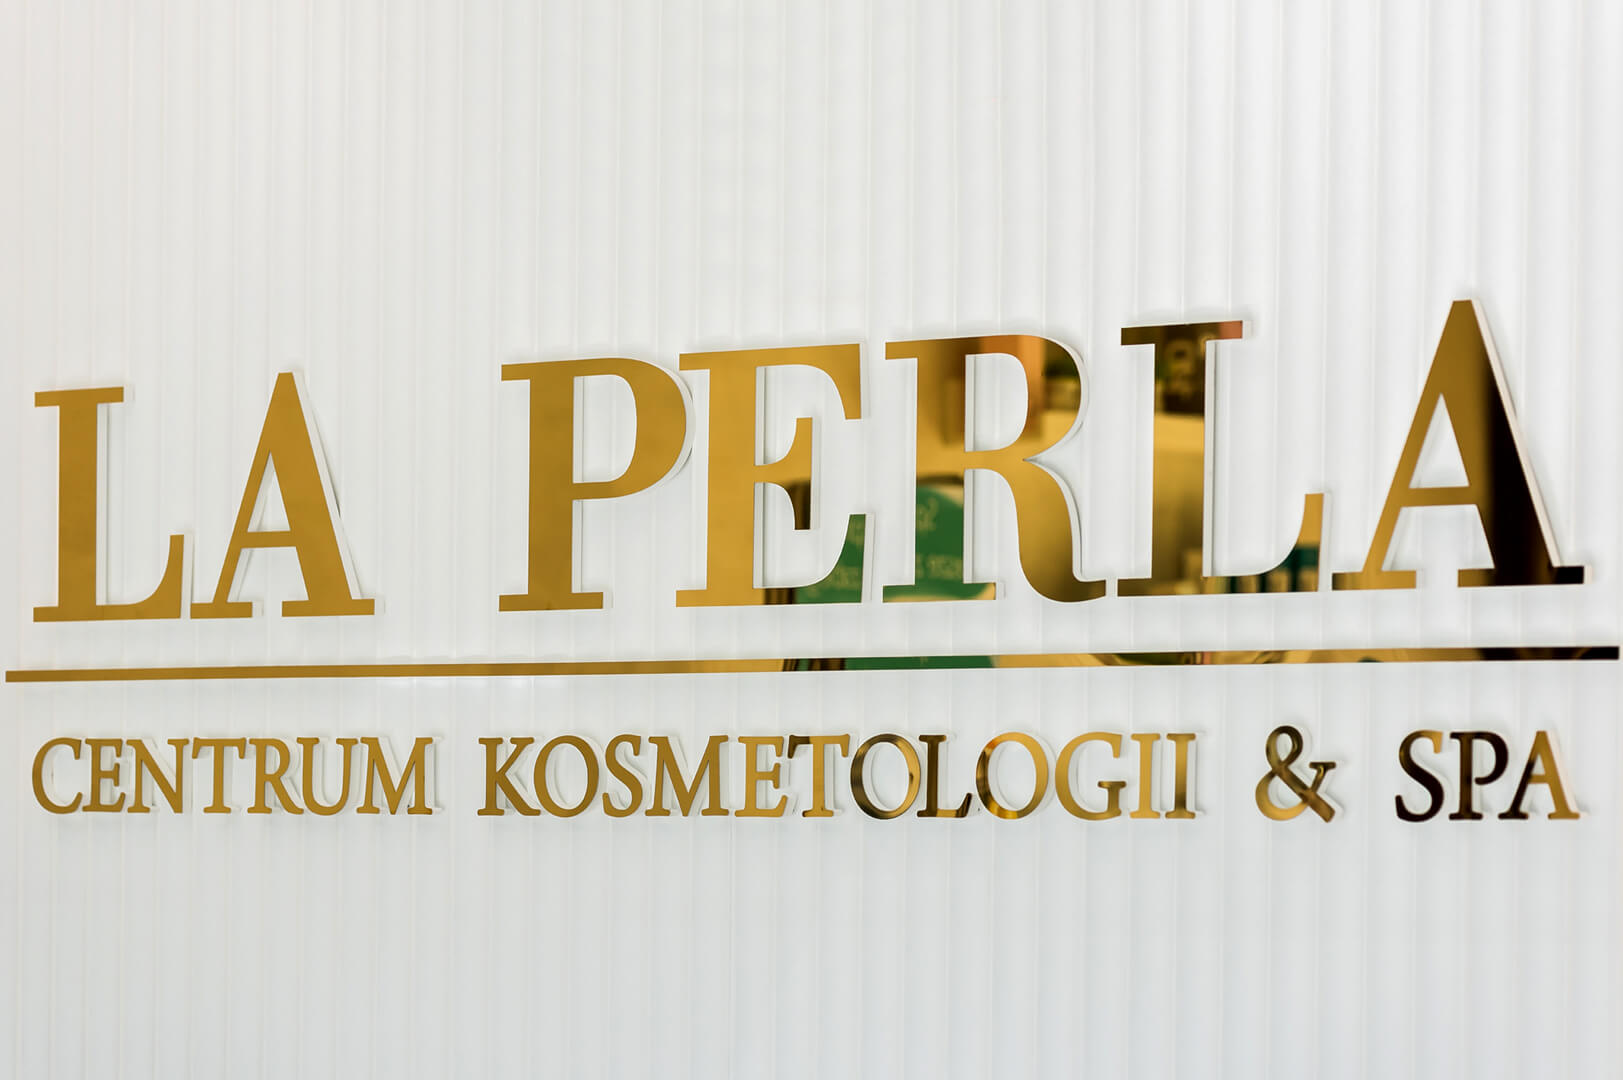 LA PERLA - 3D-Buchstaben in Gold für Kosmetologie- und Wellness-Center